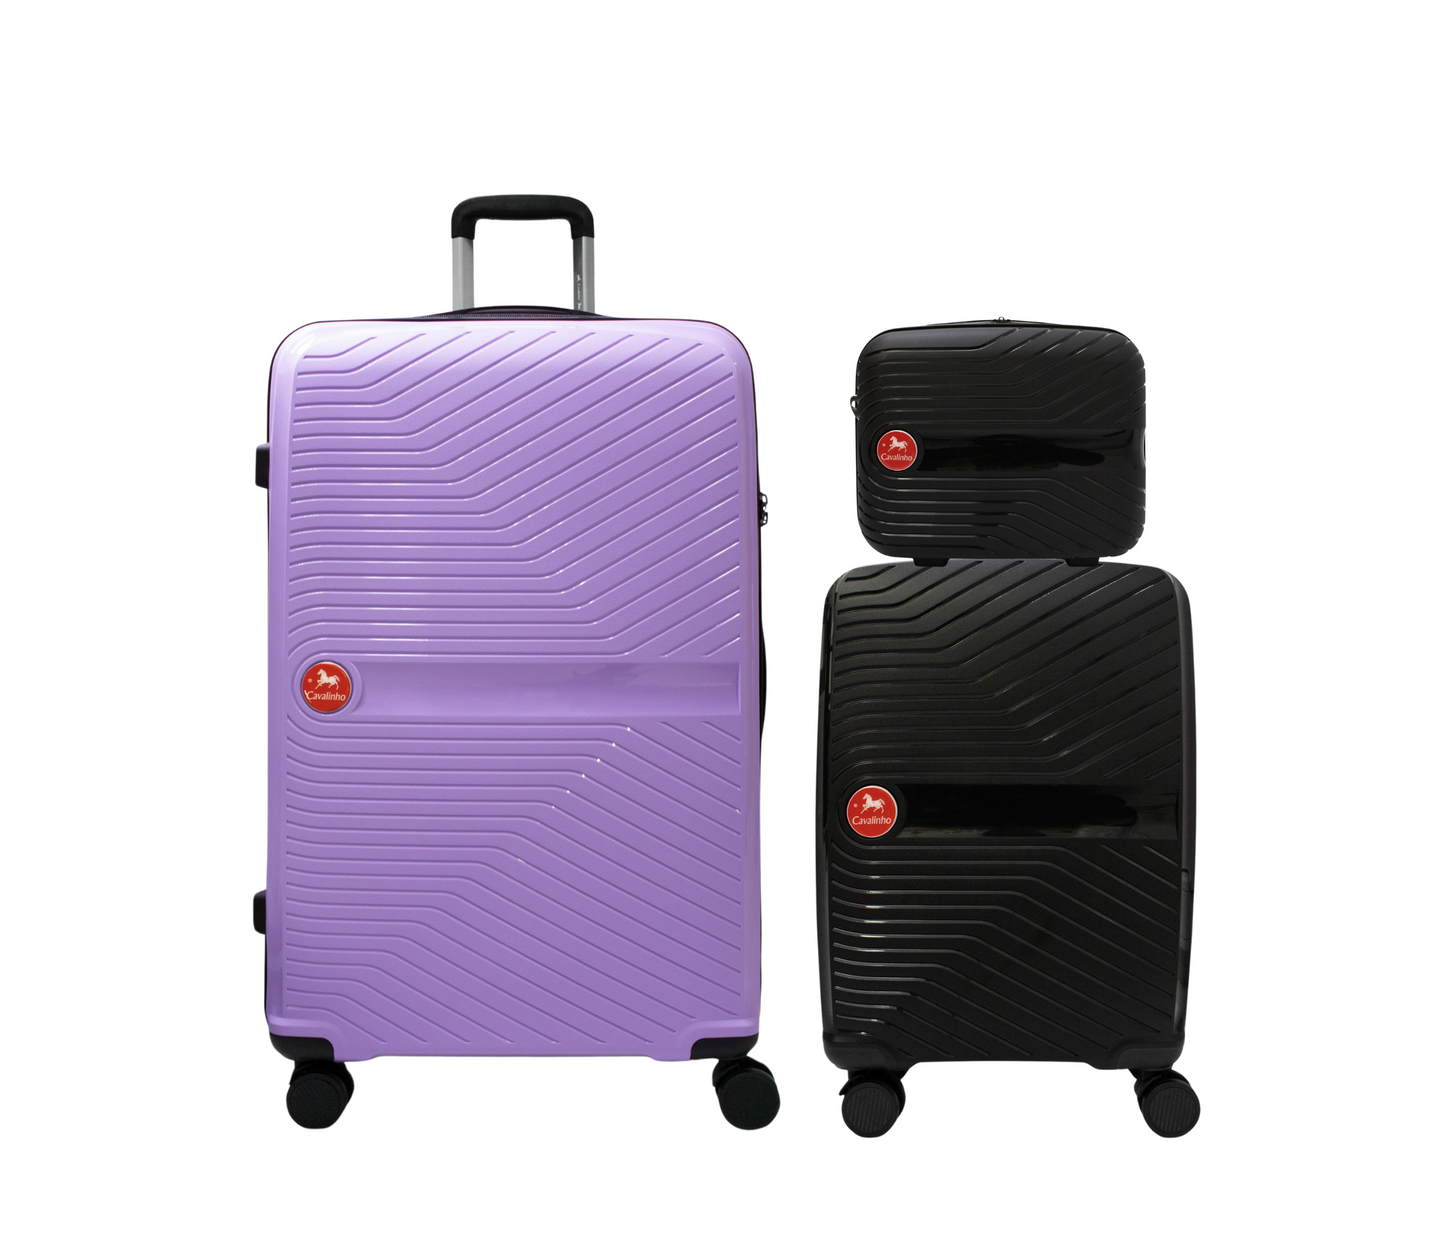 Cavalinho Canada & USA Colorful 3 Piece Luggage Set (15", 19" & 28") - Black Black Lilac - 68020004.010139.S151928._1